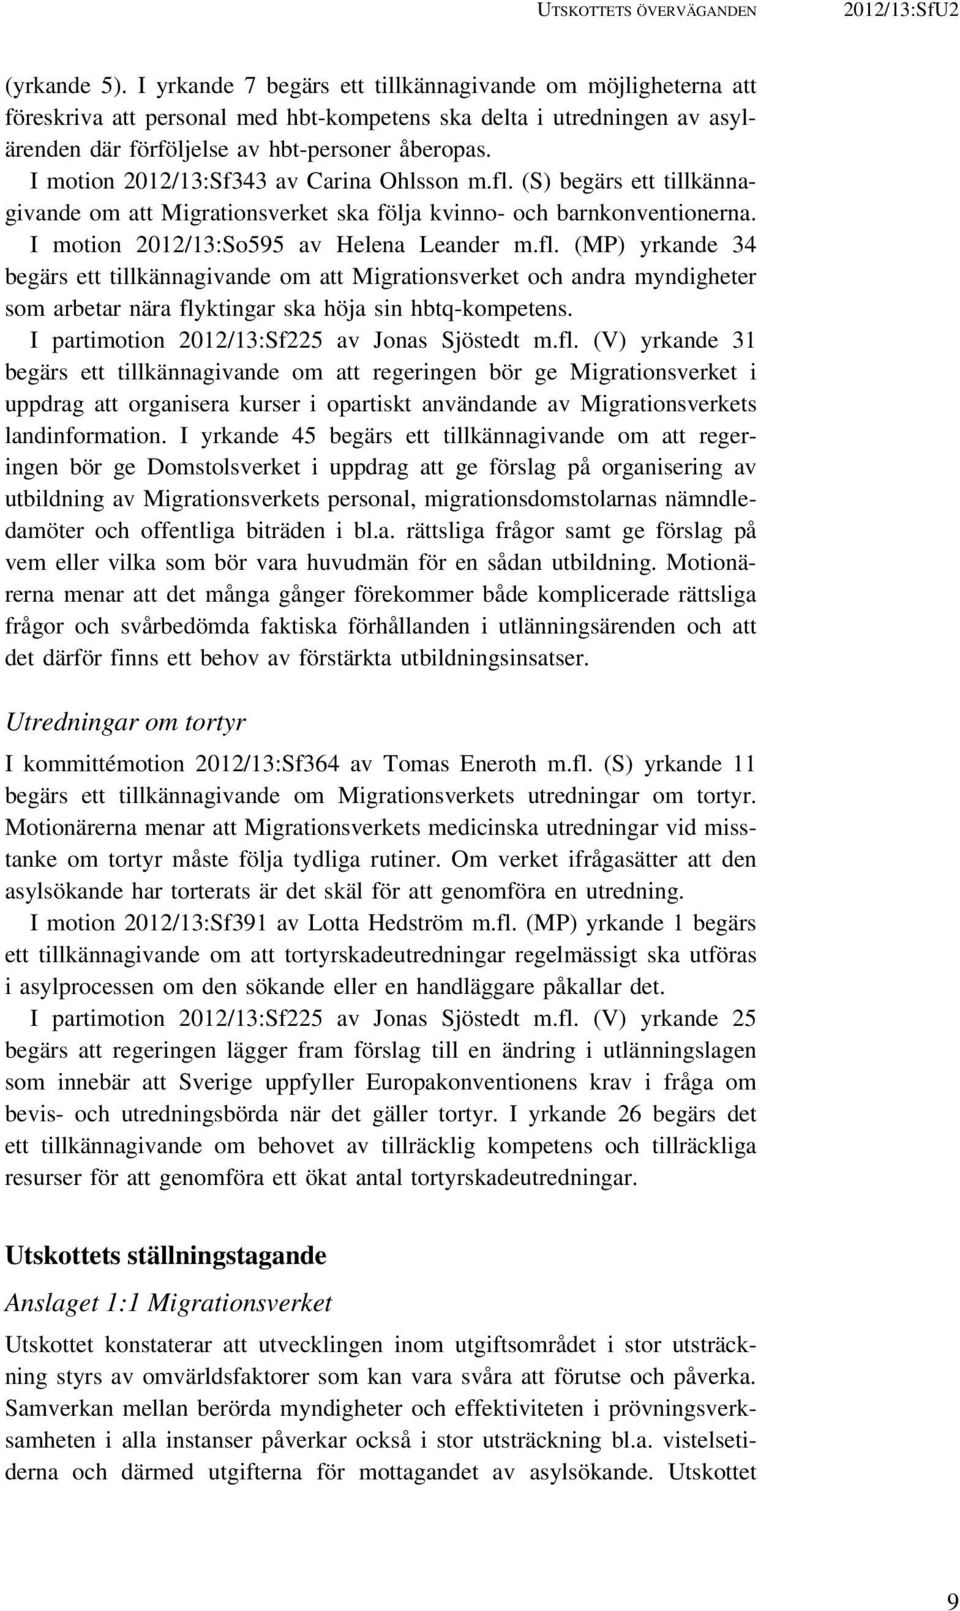 I motion 2012/13:Sf343 av Carina Ohlsson m.fl. (S) begärs ett tillkännagivande om att Migrationsverket ska följa kvinno- och barnkonventionerna. I motion 2012/13:So595 av Helena Leander m.fl. (MP) yrkande 34 begärs ett tillkännagivande om att Migrationsverket och andra myndigheter som arbetar nära flyktingar ska höja sin hbtq-kompetens.